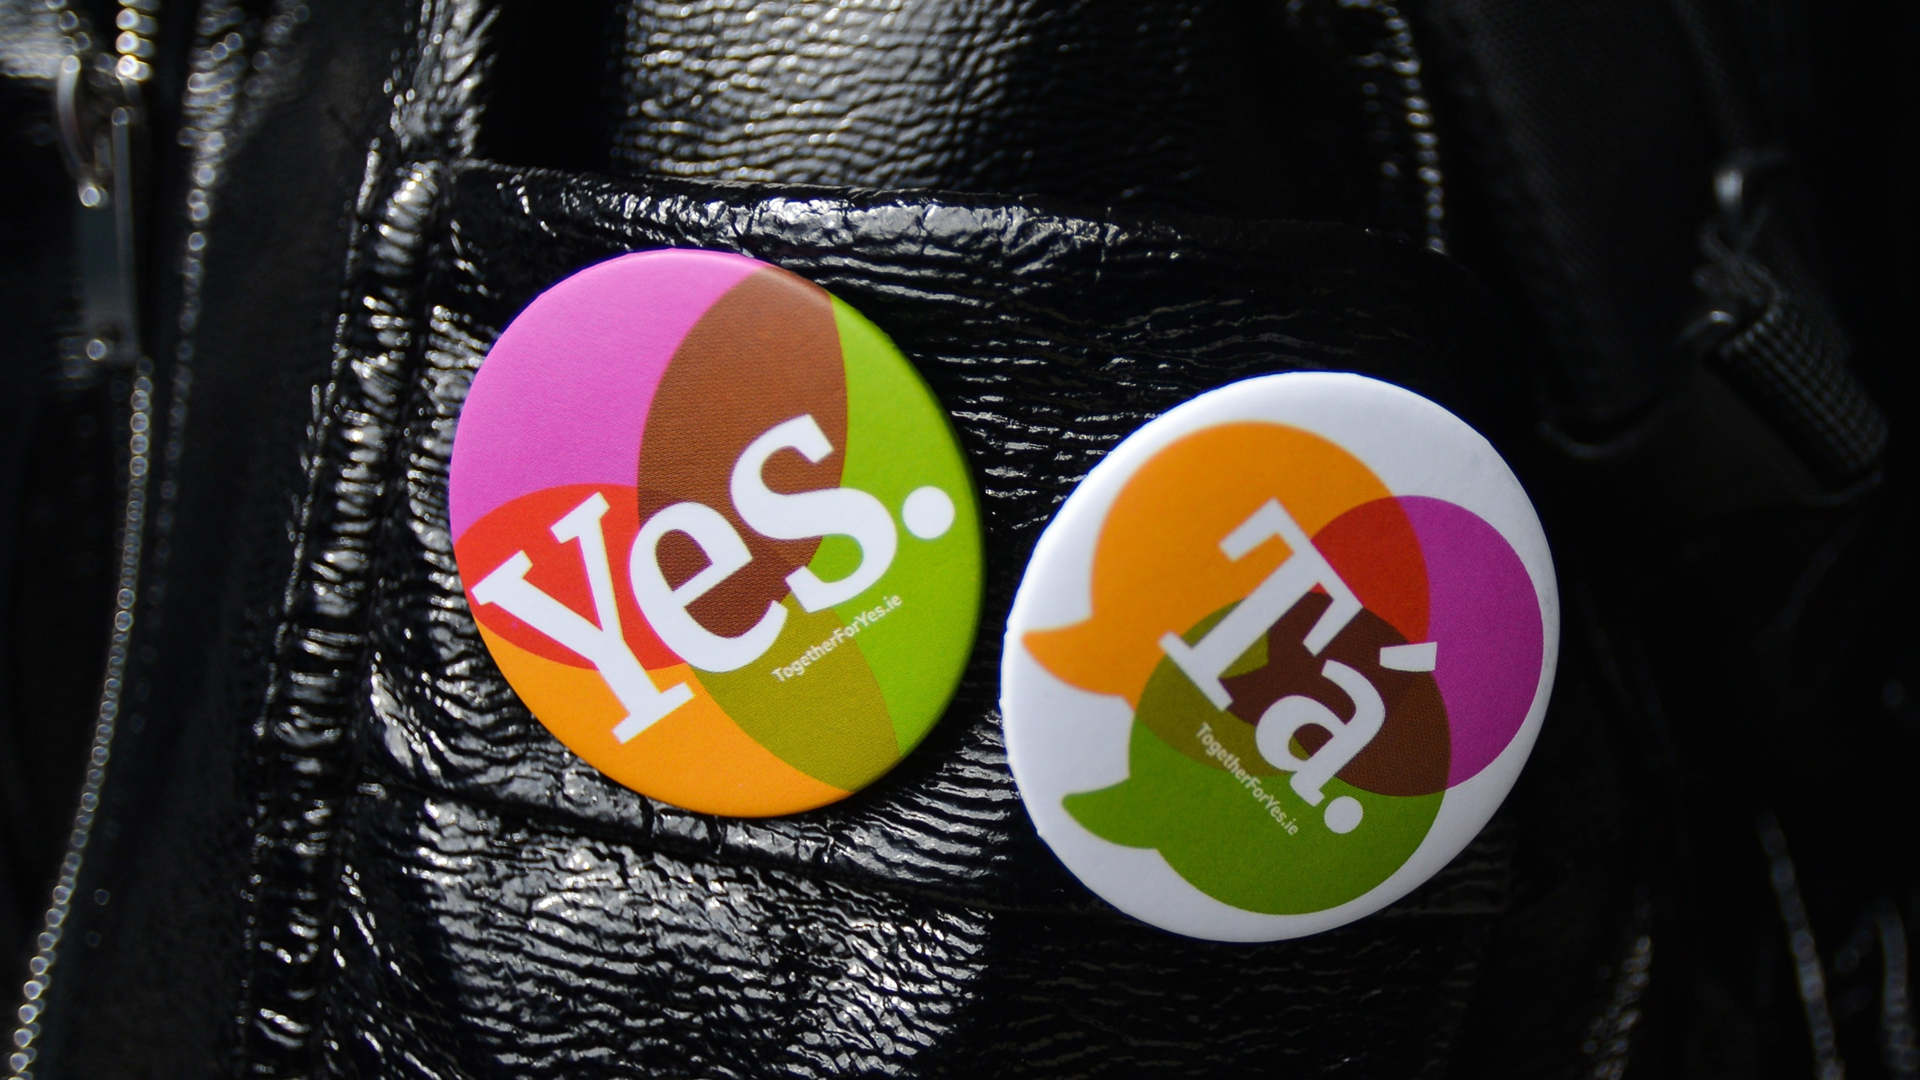 "Ja" in englischer und irisch-gälischer Sprache steht auf zwei Ansteckern an einer Lederjacke. | picture alliance / NurPhoto